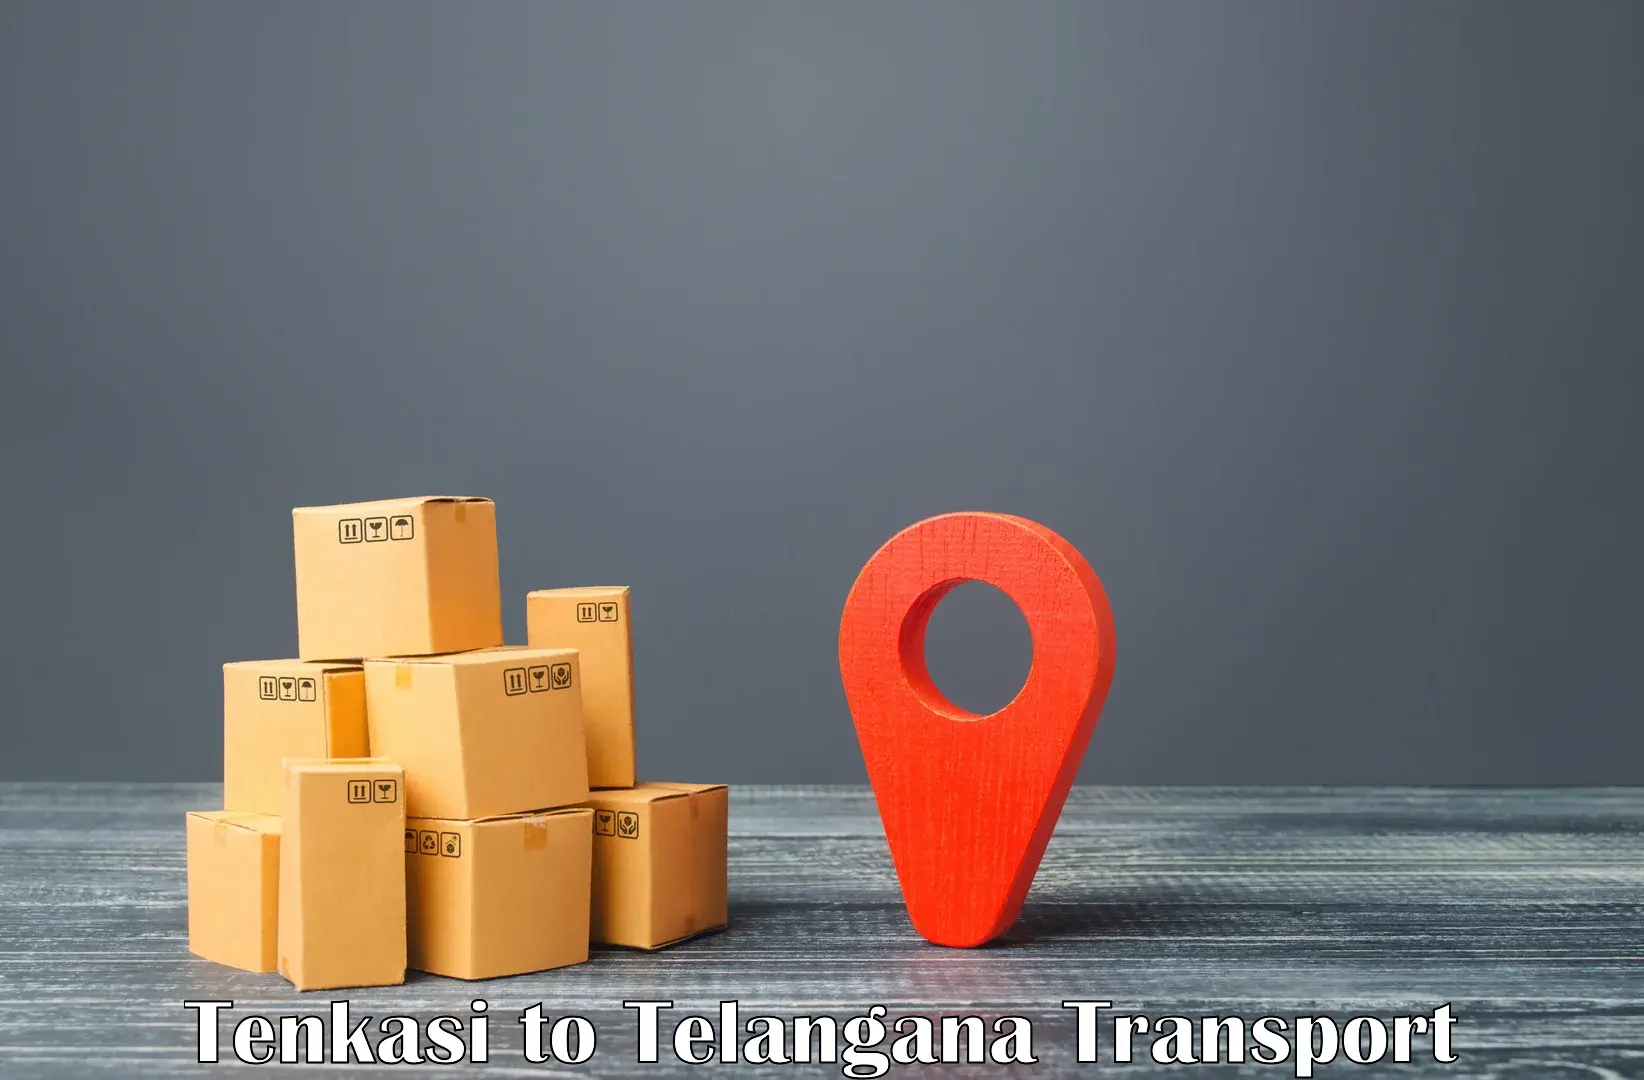 Cargo transportation services in Tenkasi to Bhongir